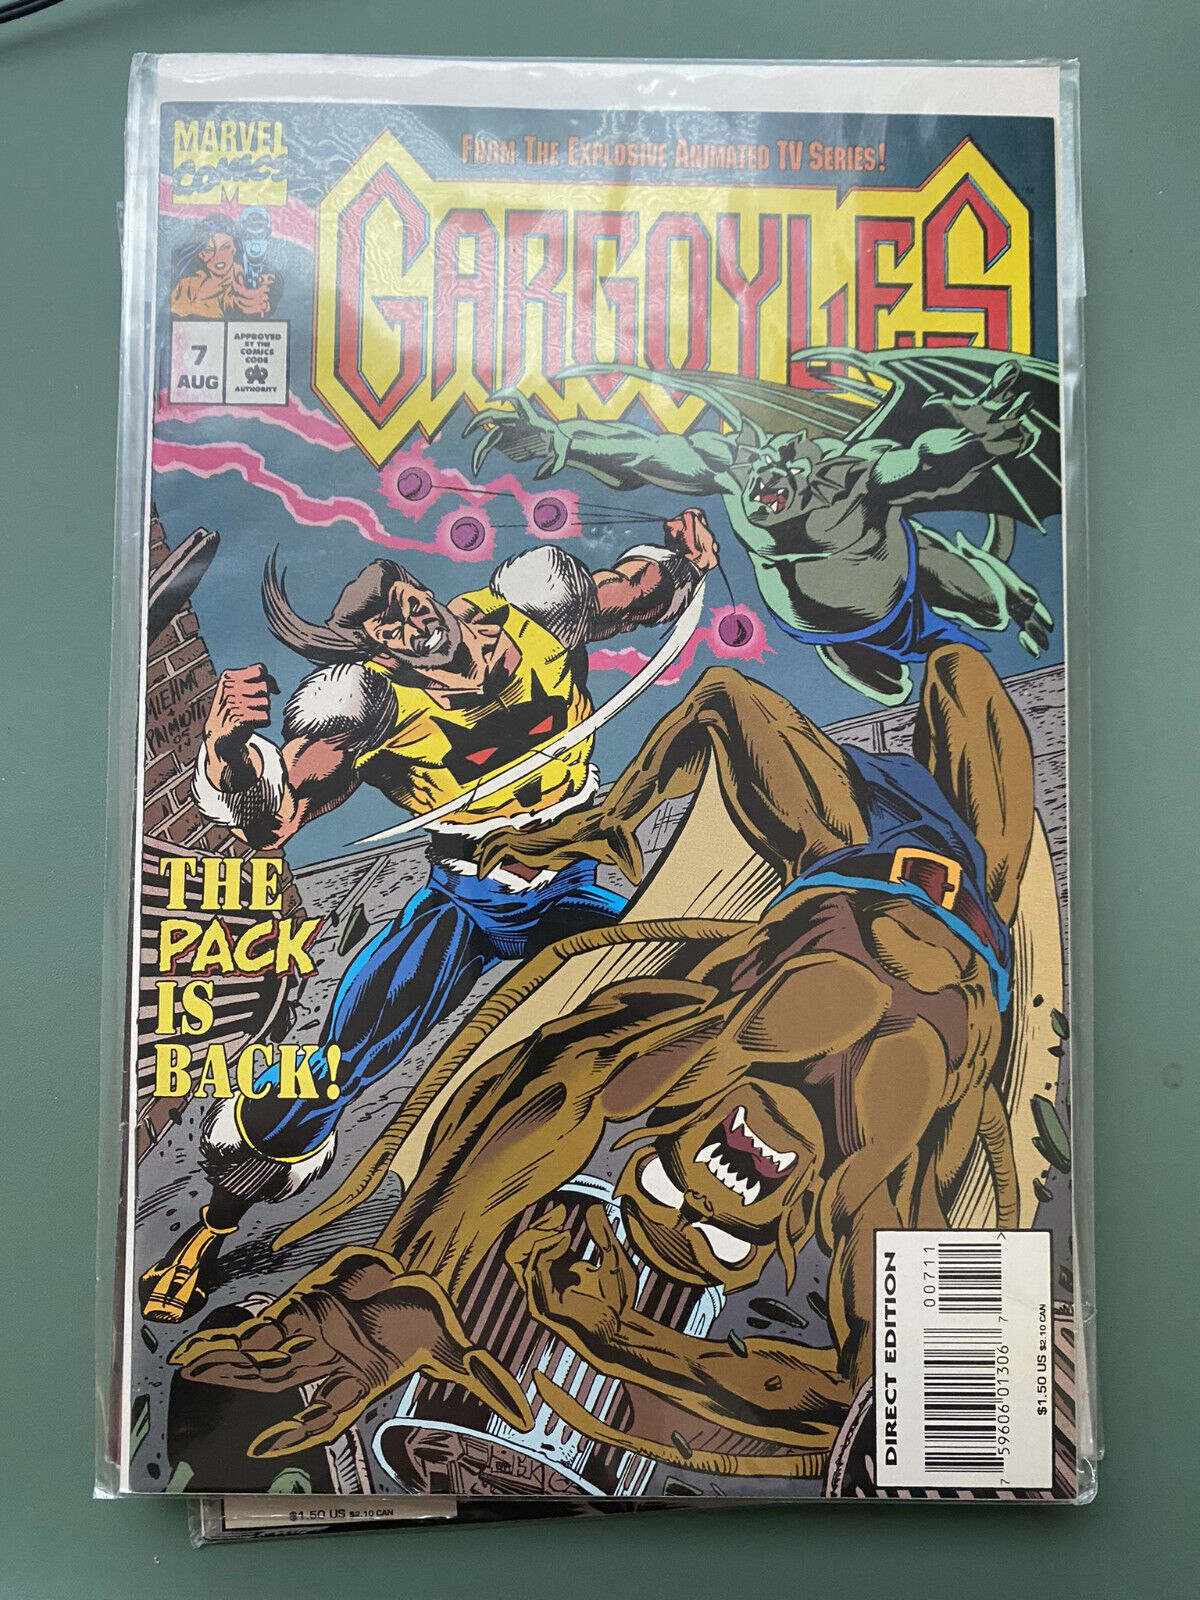 Gargoyles #7 The Pack is Back (Marvel Comics August 1995)